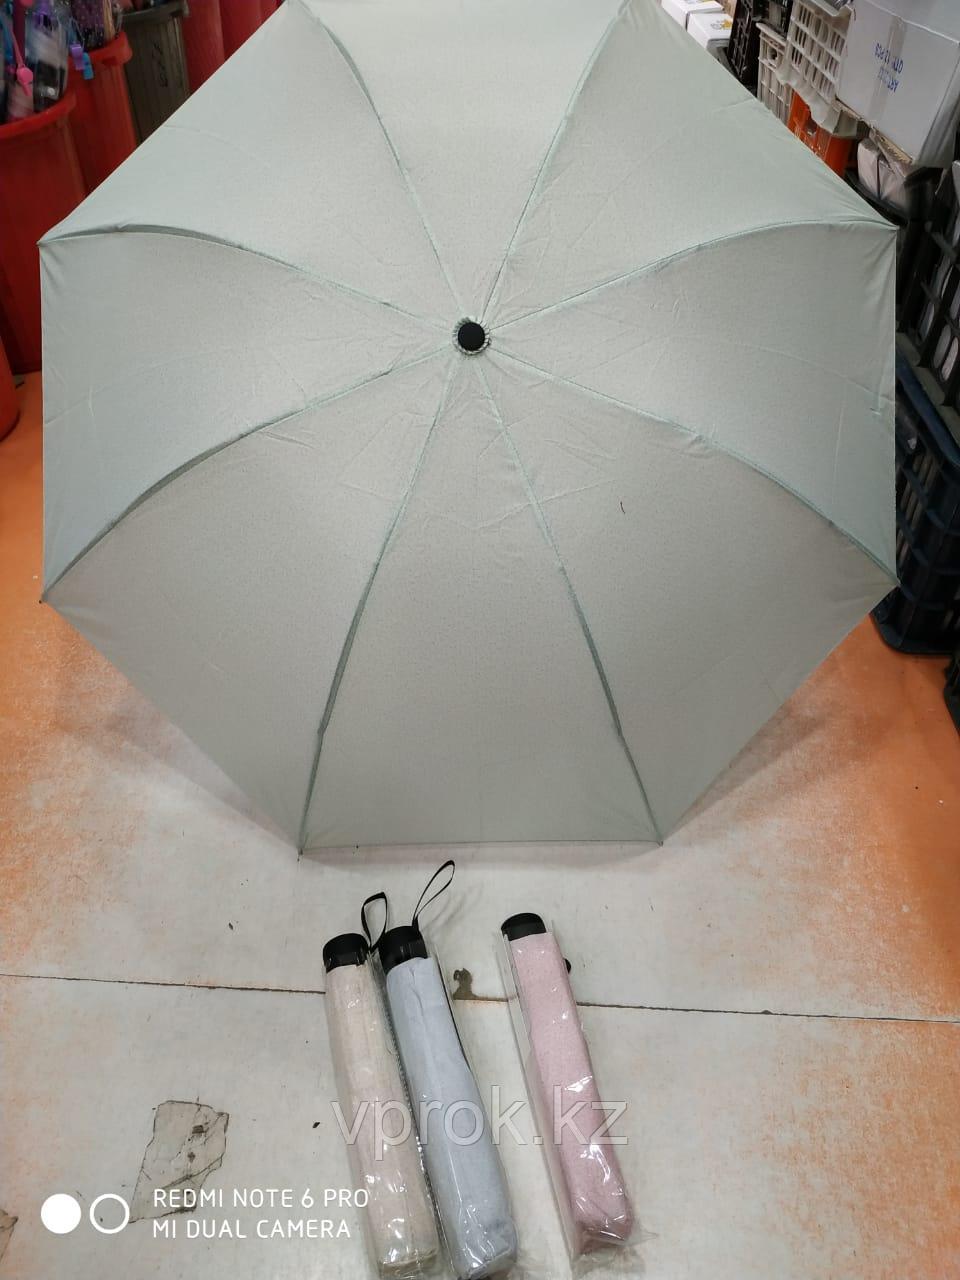 Полуавтоматический складной женский зонт, серый